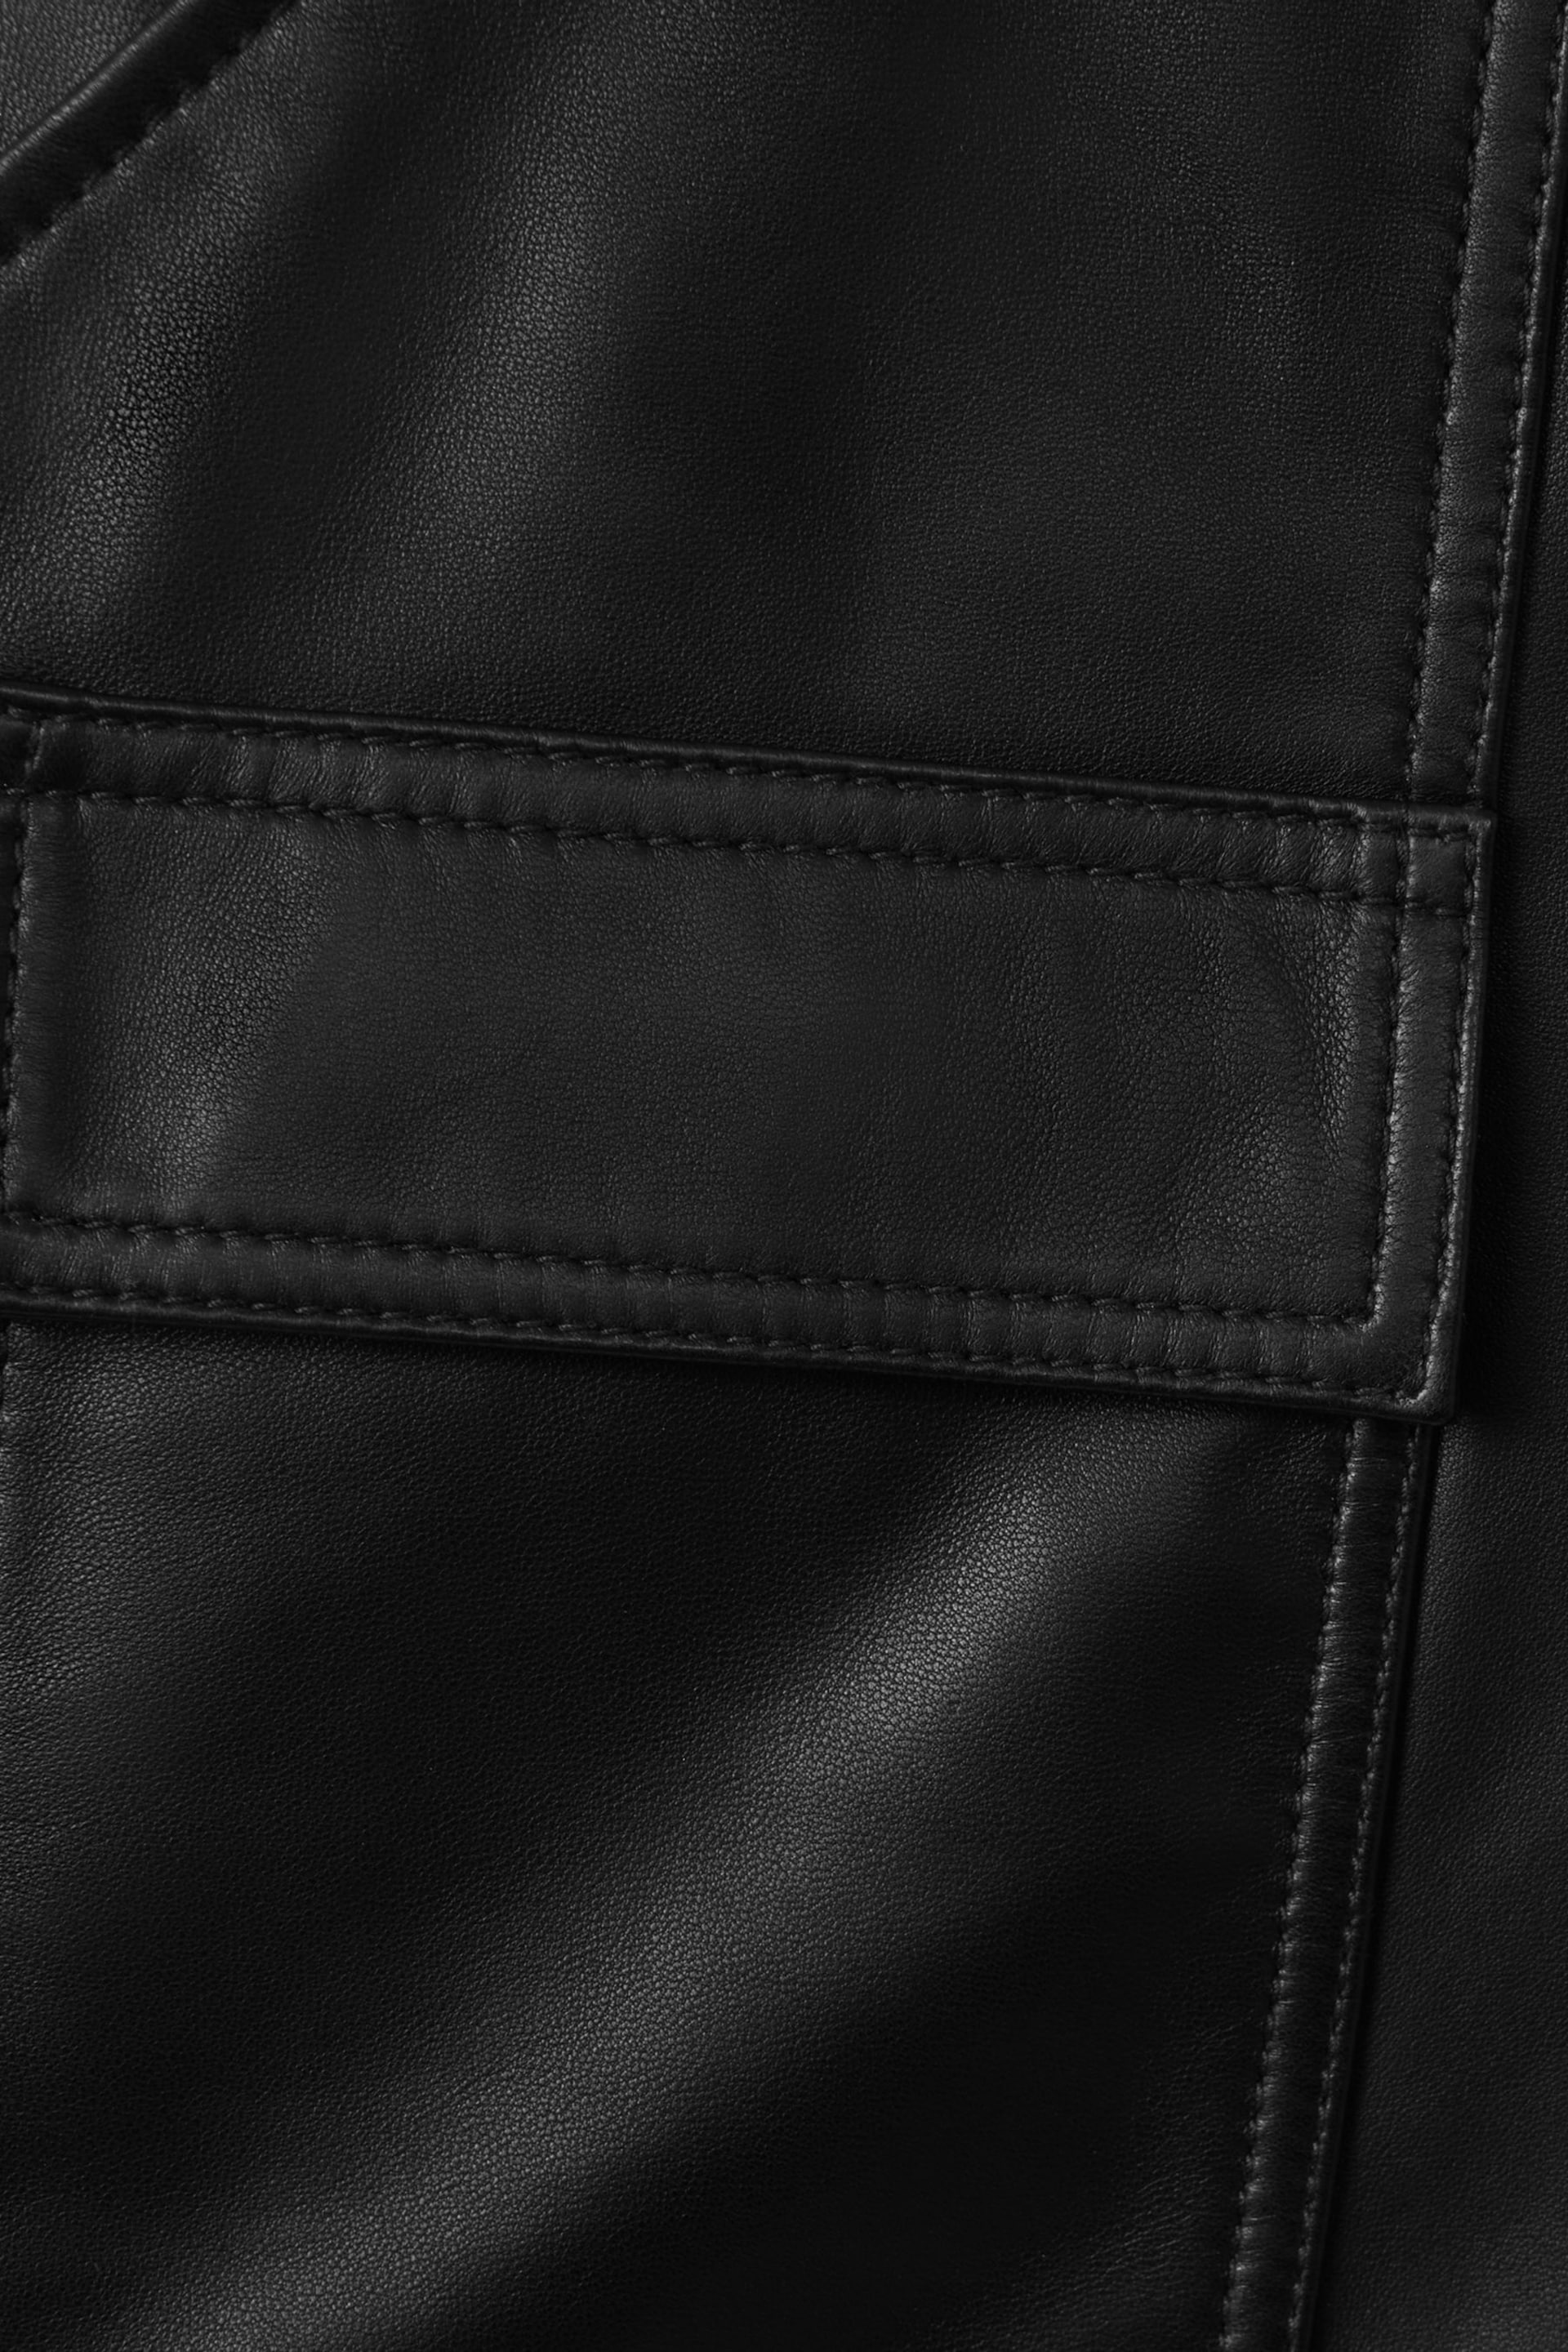 Reiss Black Eliana Leather Cargo Shorts - Image 7 of 7